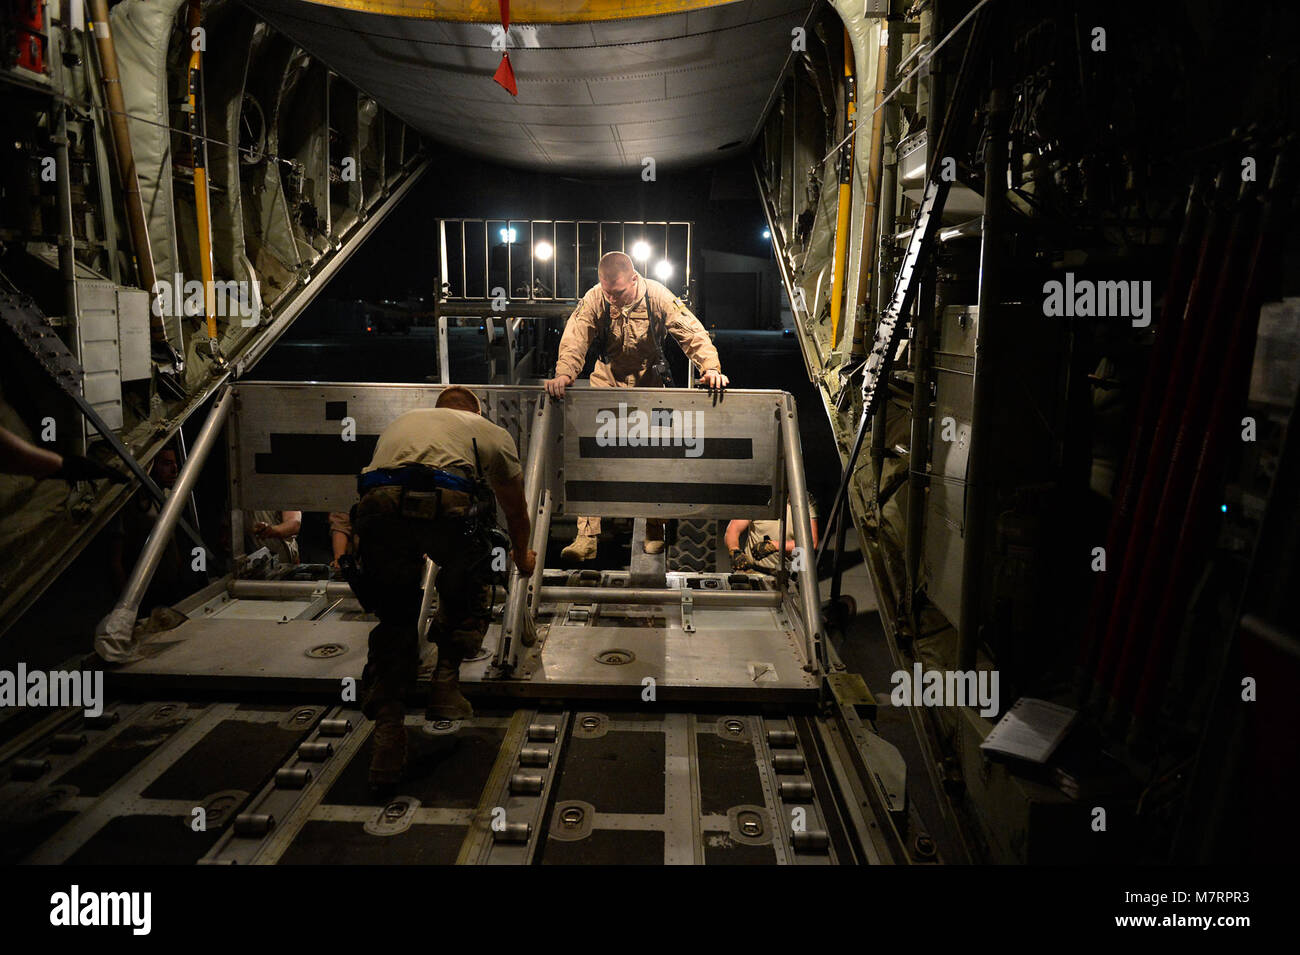 Aviadores estadounidenses de la 774ª Escuadrilla Airlifit expedicionaria equipos de inserción en un C-130J Super Hercules antes de un salto en paracaídas en el aeródromo de Bagram, Afganistán, 1 de agosto de 2014. El escuadrón completó un salto en paracaídas para el Ejército Nacional Afgano utilizando el nuevo sistema de liberación de puerta inalámbrico. (Ee.Uu. Foto de la fuerza aérea por el Sargento. Evelyn Chávez/liberado) 455a ala expedicionaria aérea aeródromo de Bagram, Afganistán Foto de stock